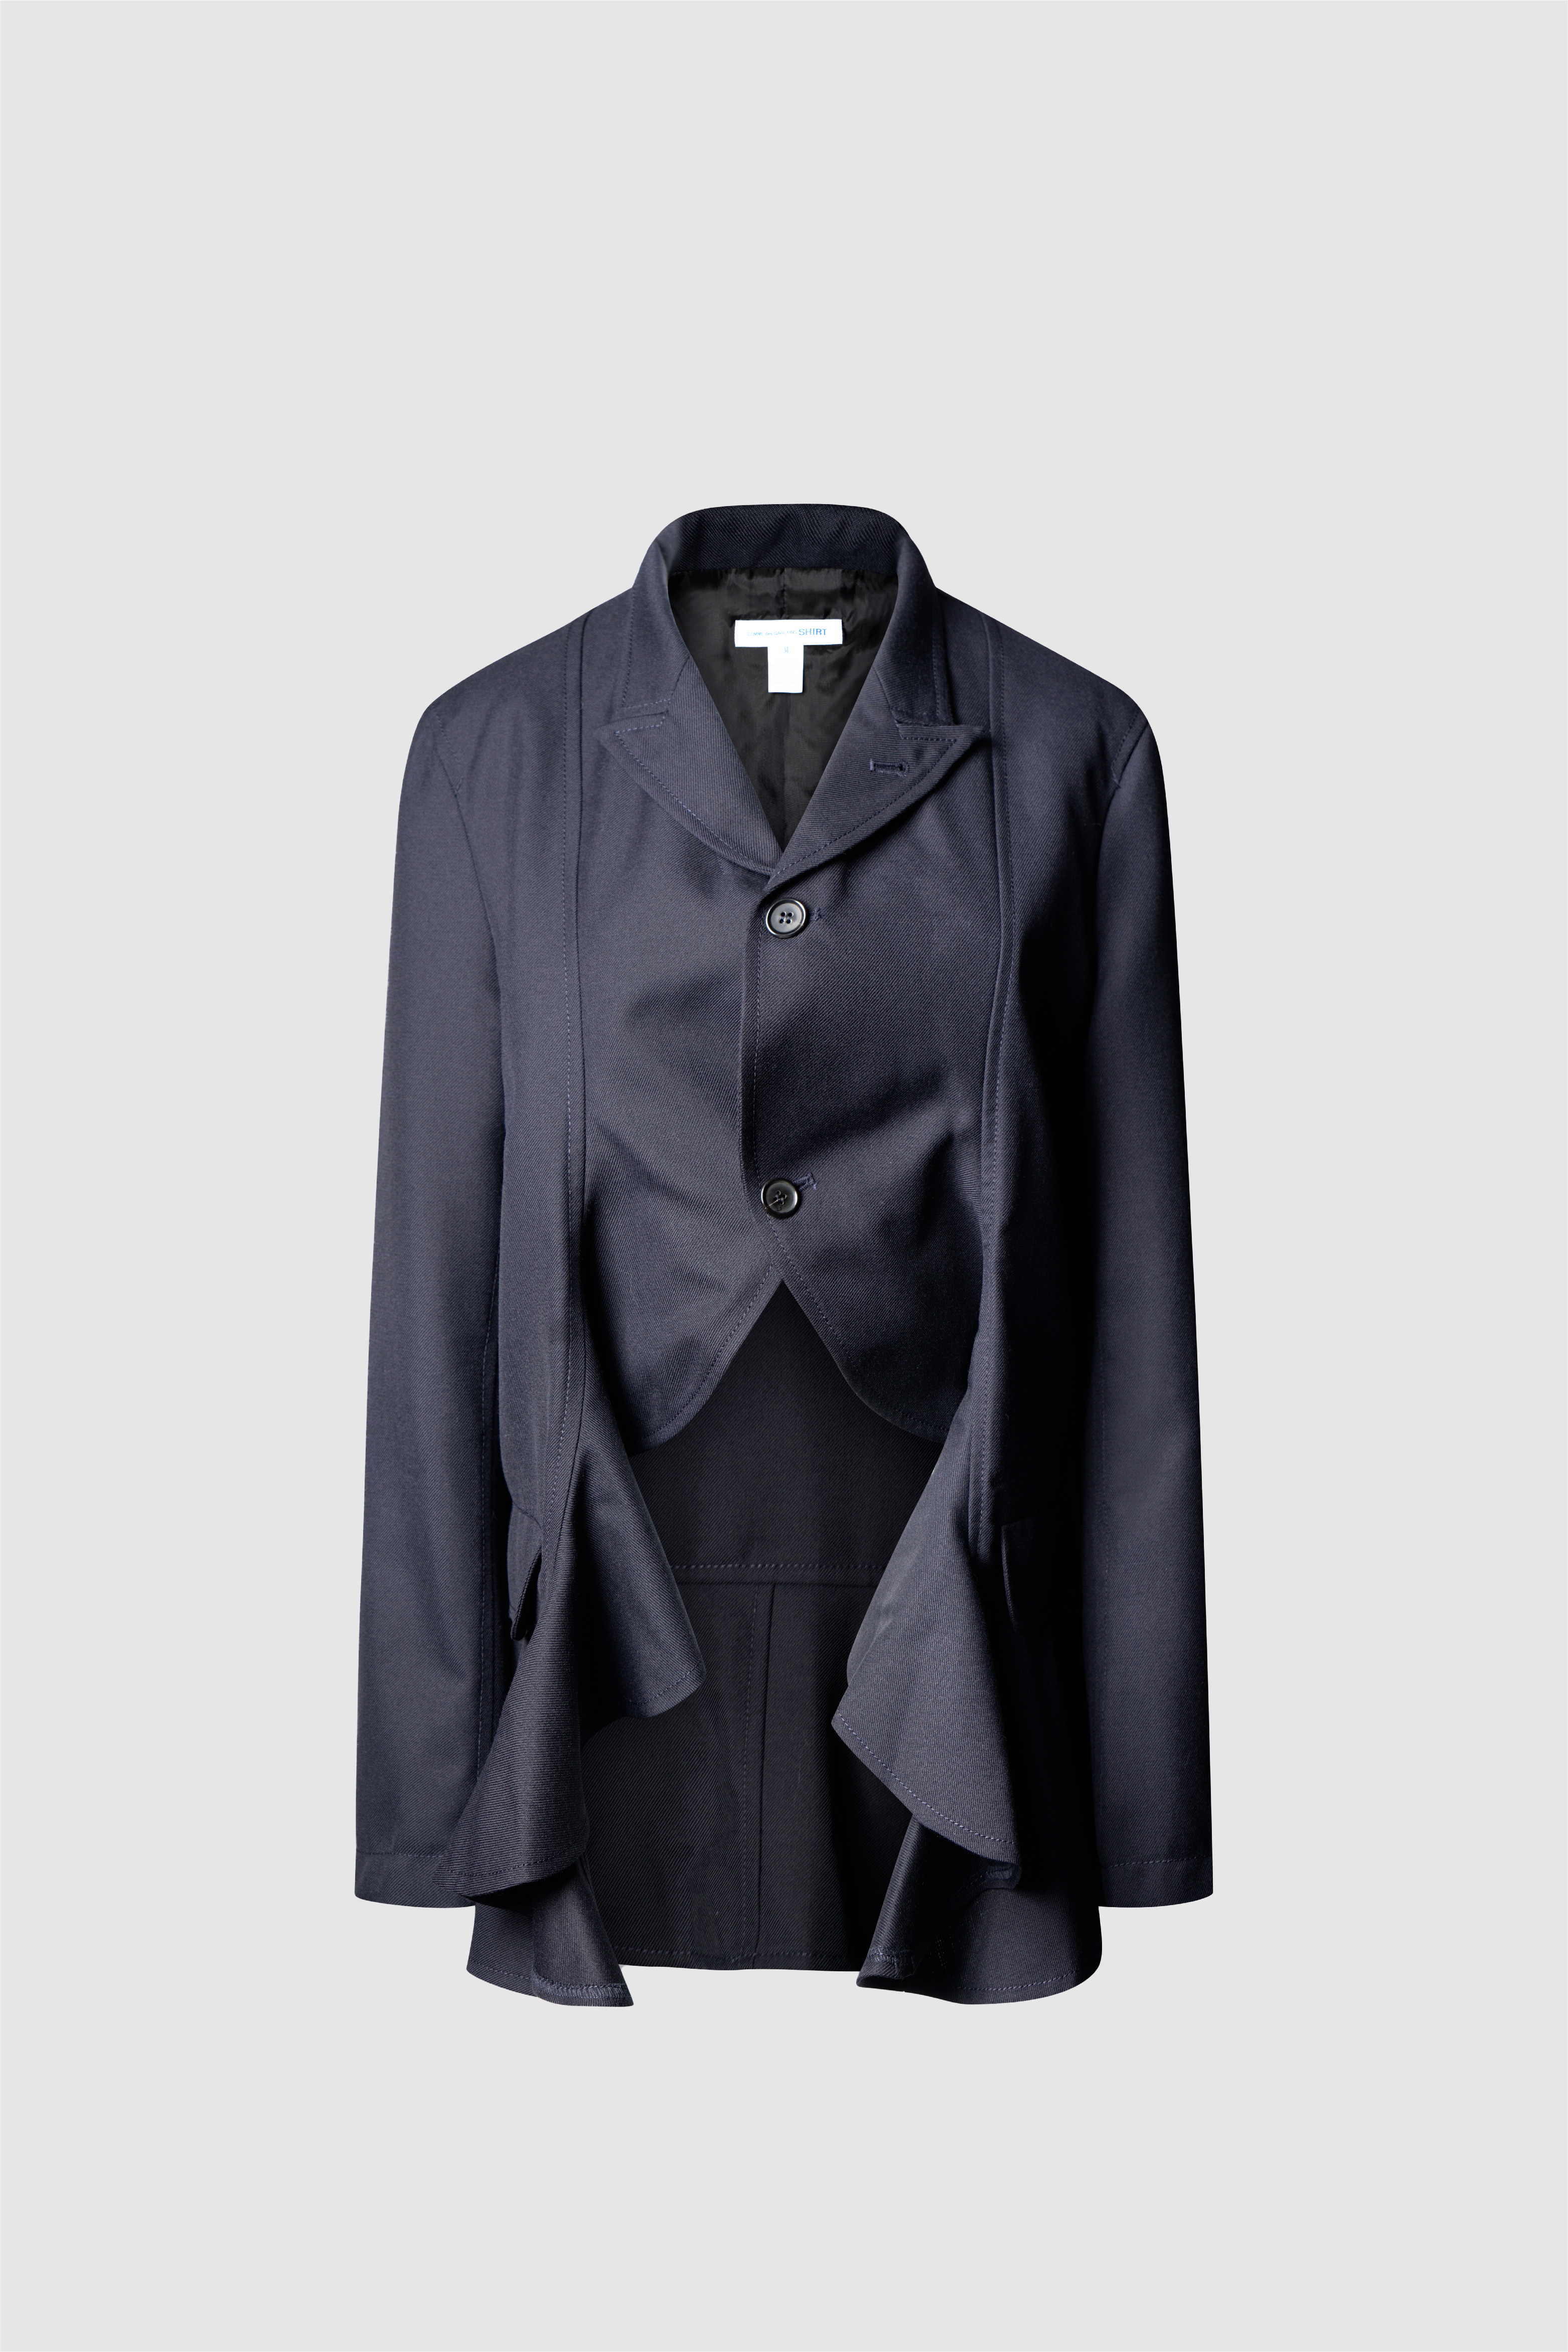 Selectshop FRAME - COMME DES GARÇONS SHIRT Jacket Outerwear Concept Store Dubai